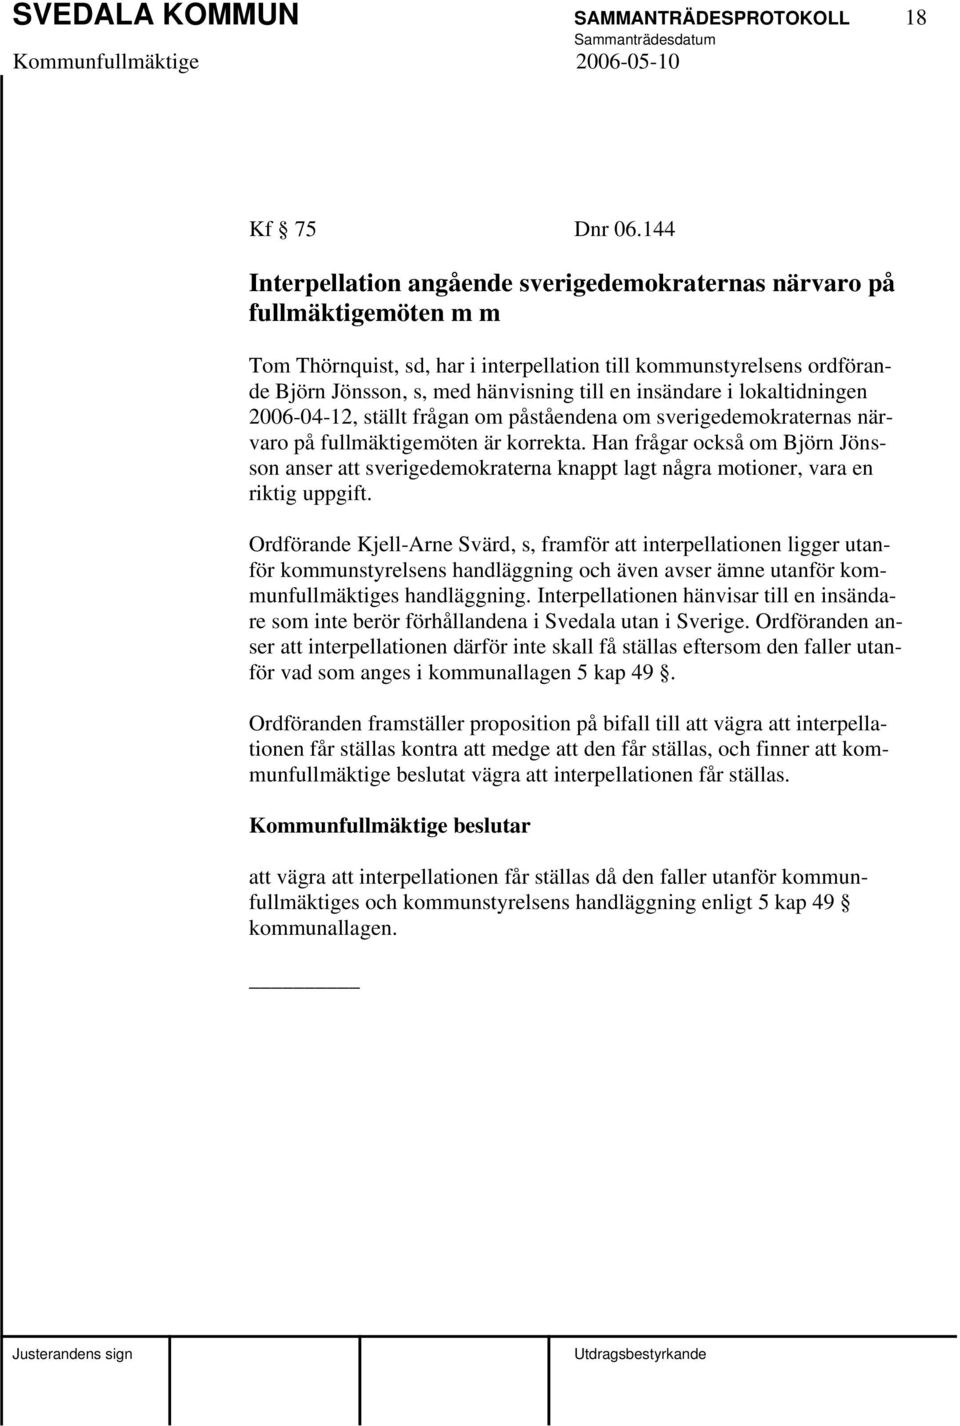 insändare i lokaltidningen 2006-04-12, ställt frågan om påståendena om sverigedemokraternas närvaro på fullmäktigemöten är korrekta.